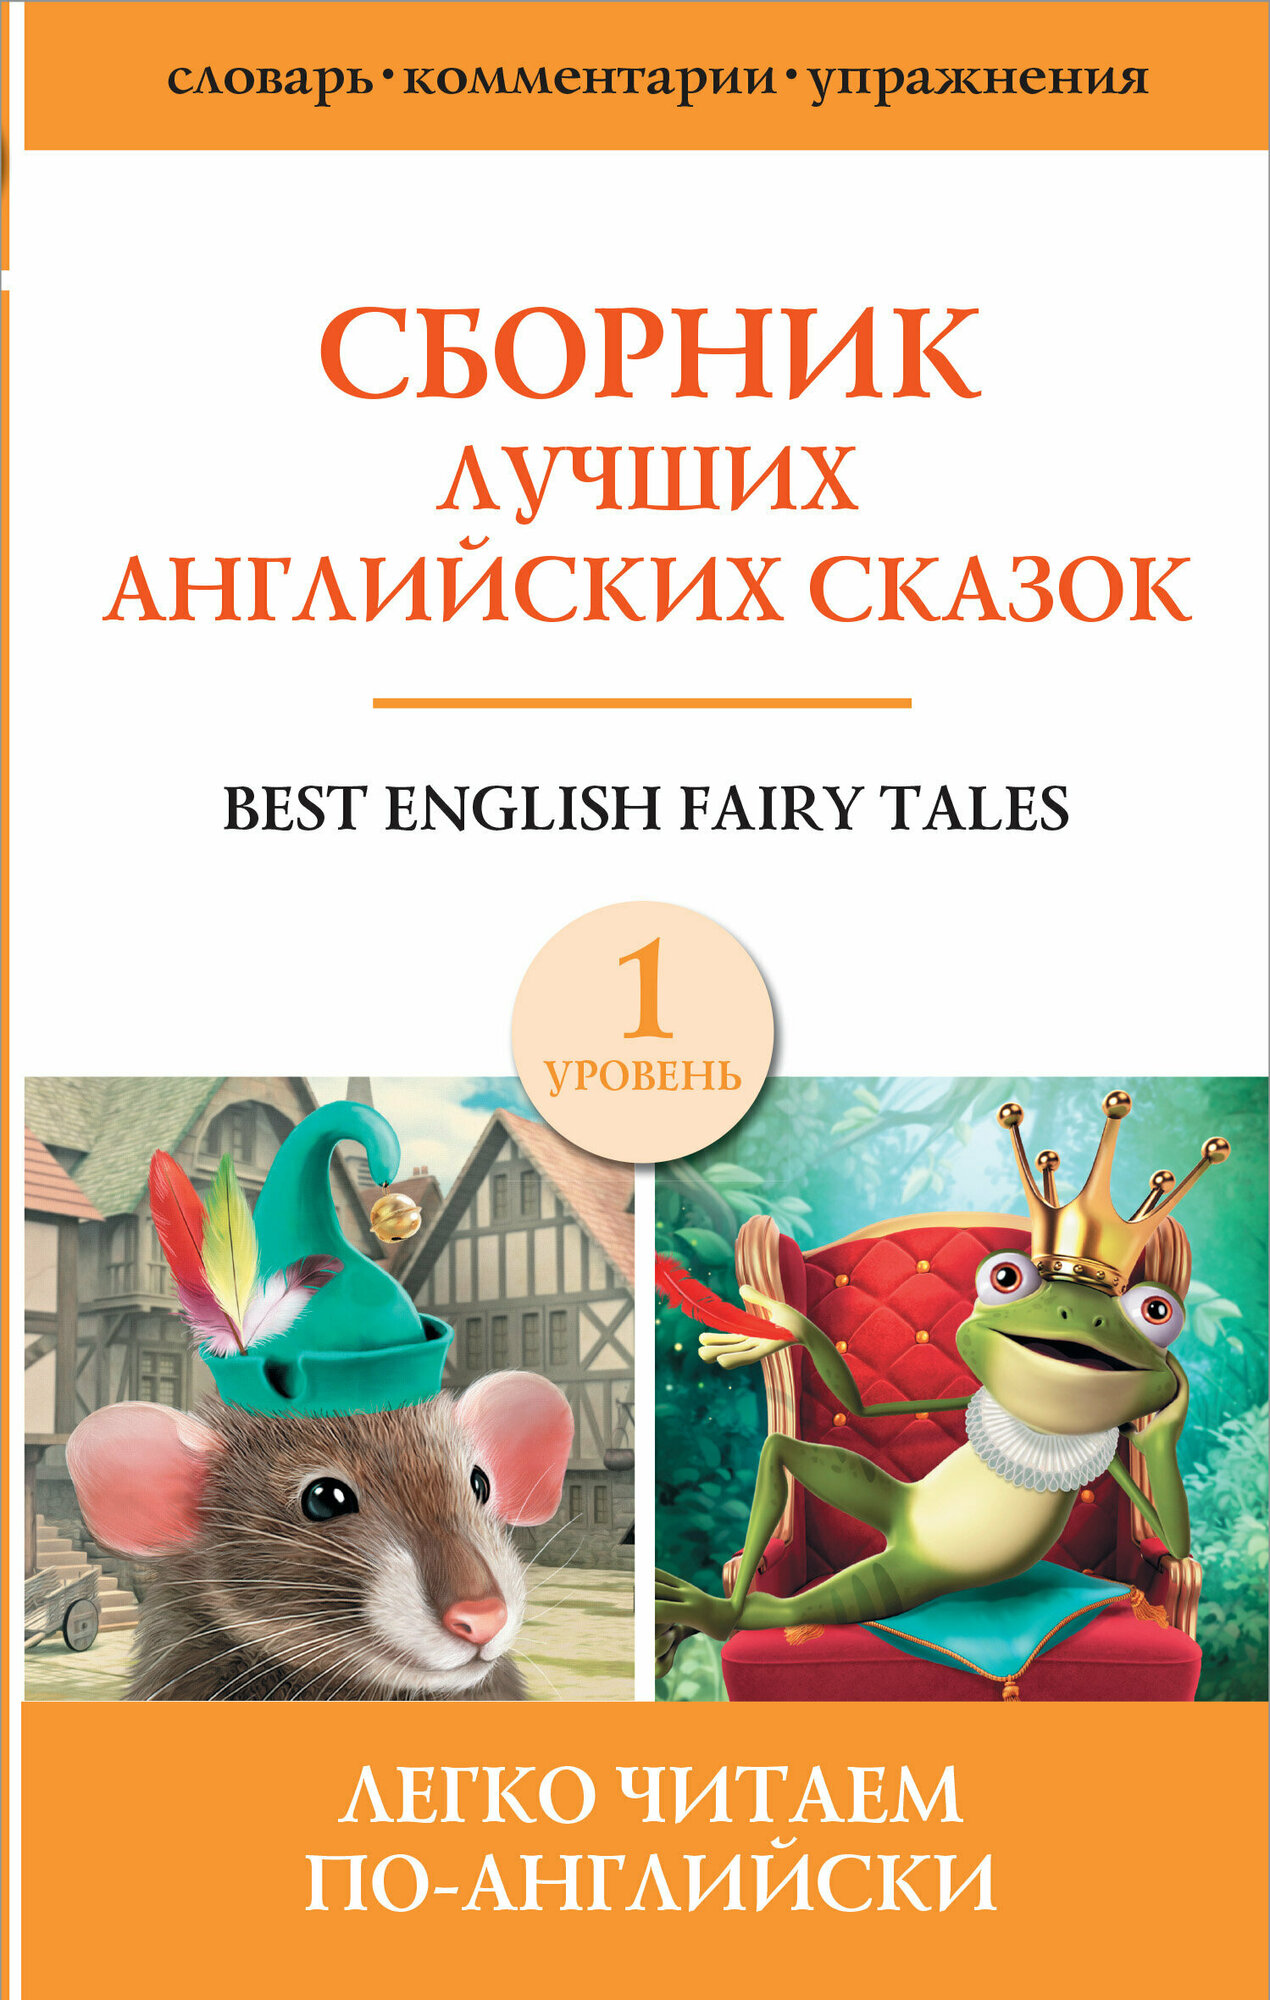 ЛегкоЧитаемПоАнгл(тв) Best english fairy tales (Сб. лучших англ. сказок) [уровень 1]